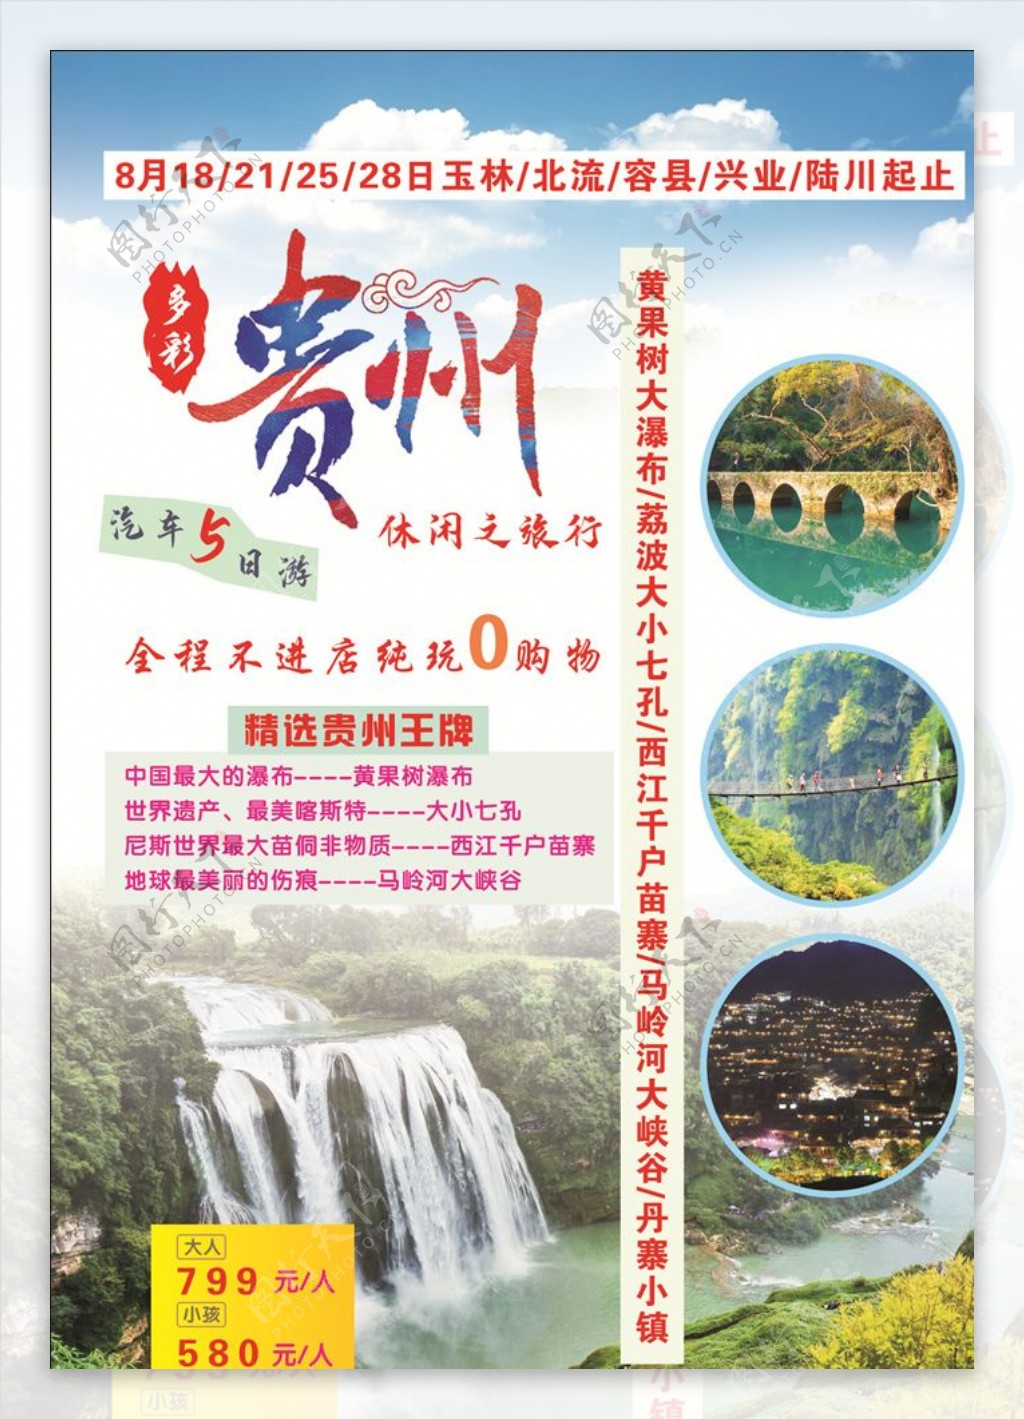 贵州旅游圣地黄果树大瀑布